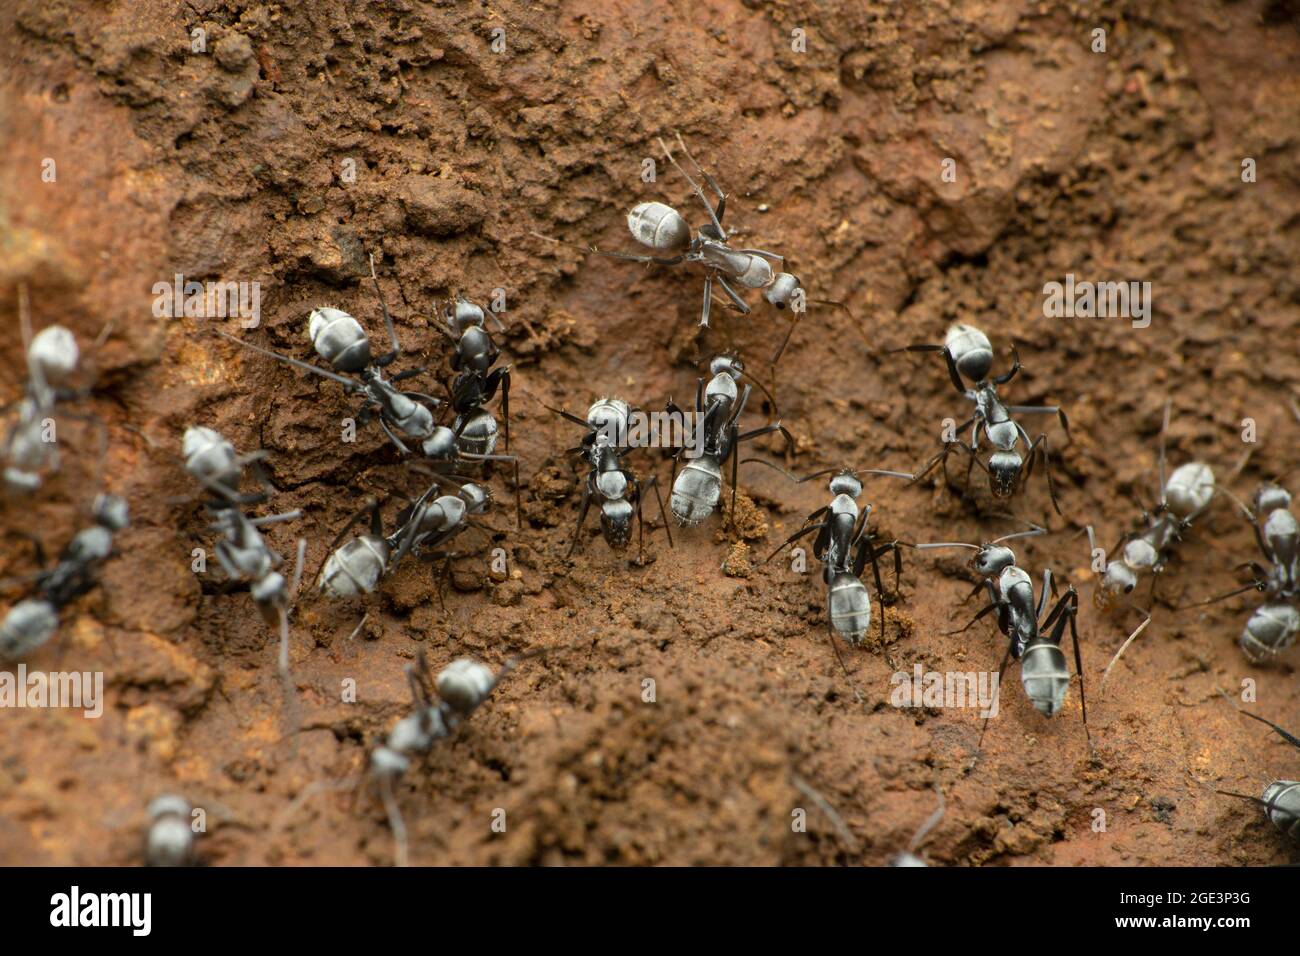 Grey coloured ant species, satara maharshtra india Stock Photo